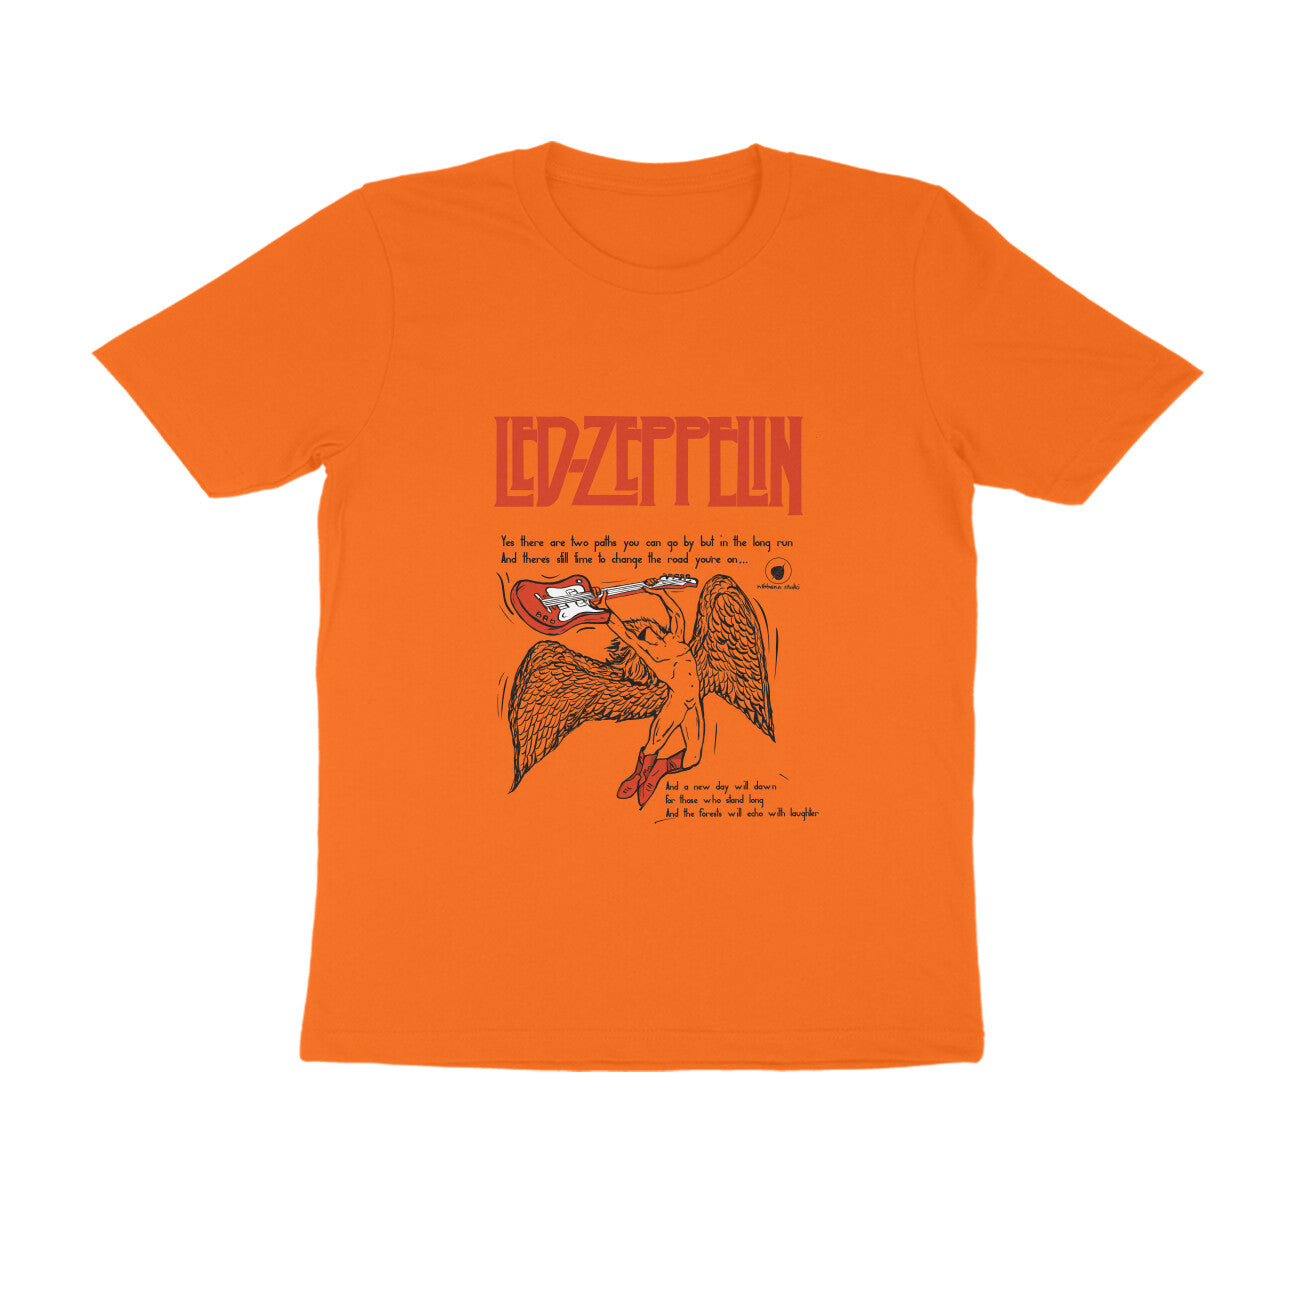 Led Zeppelin Tshirt 🎸